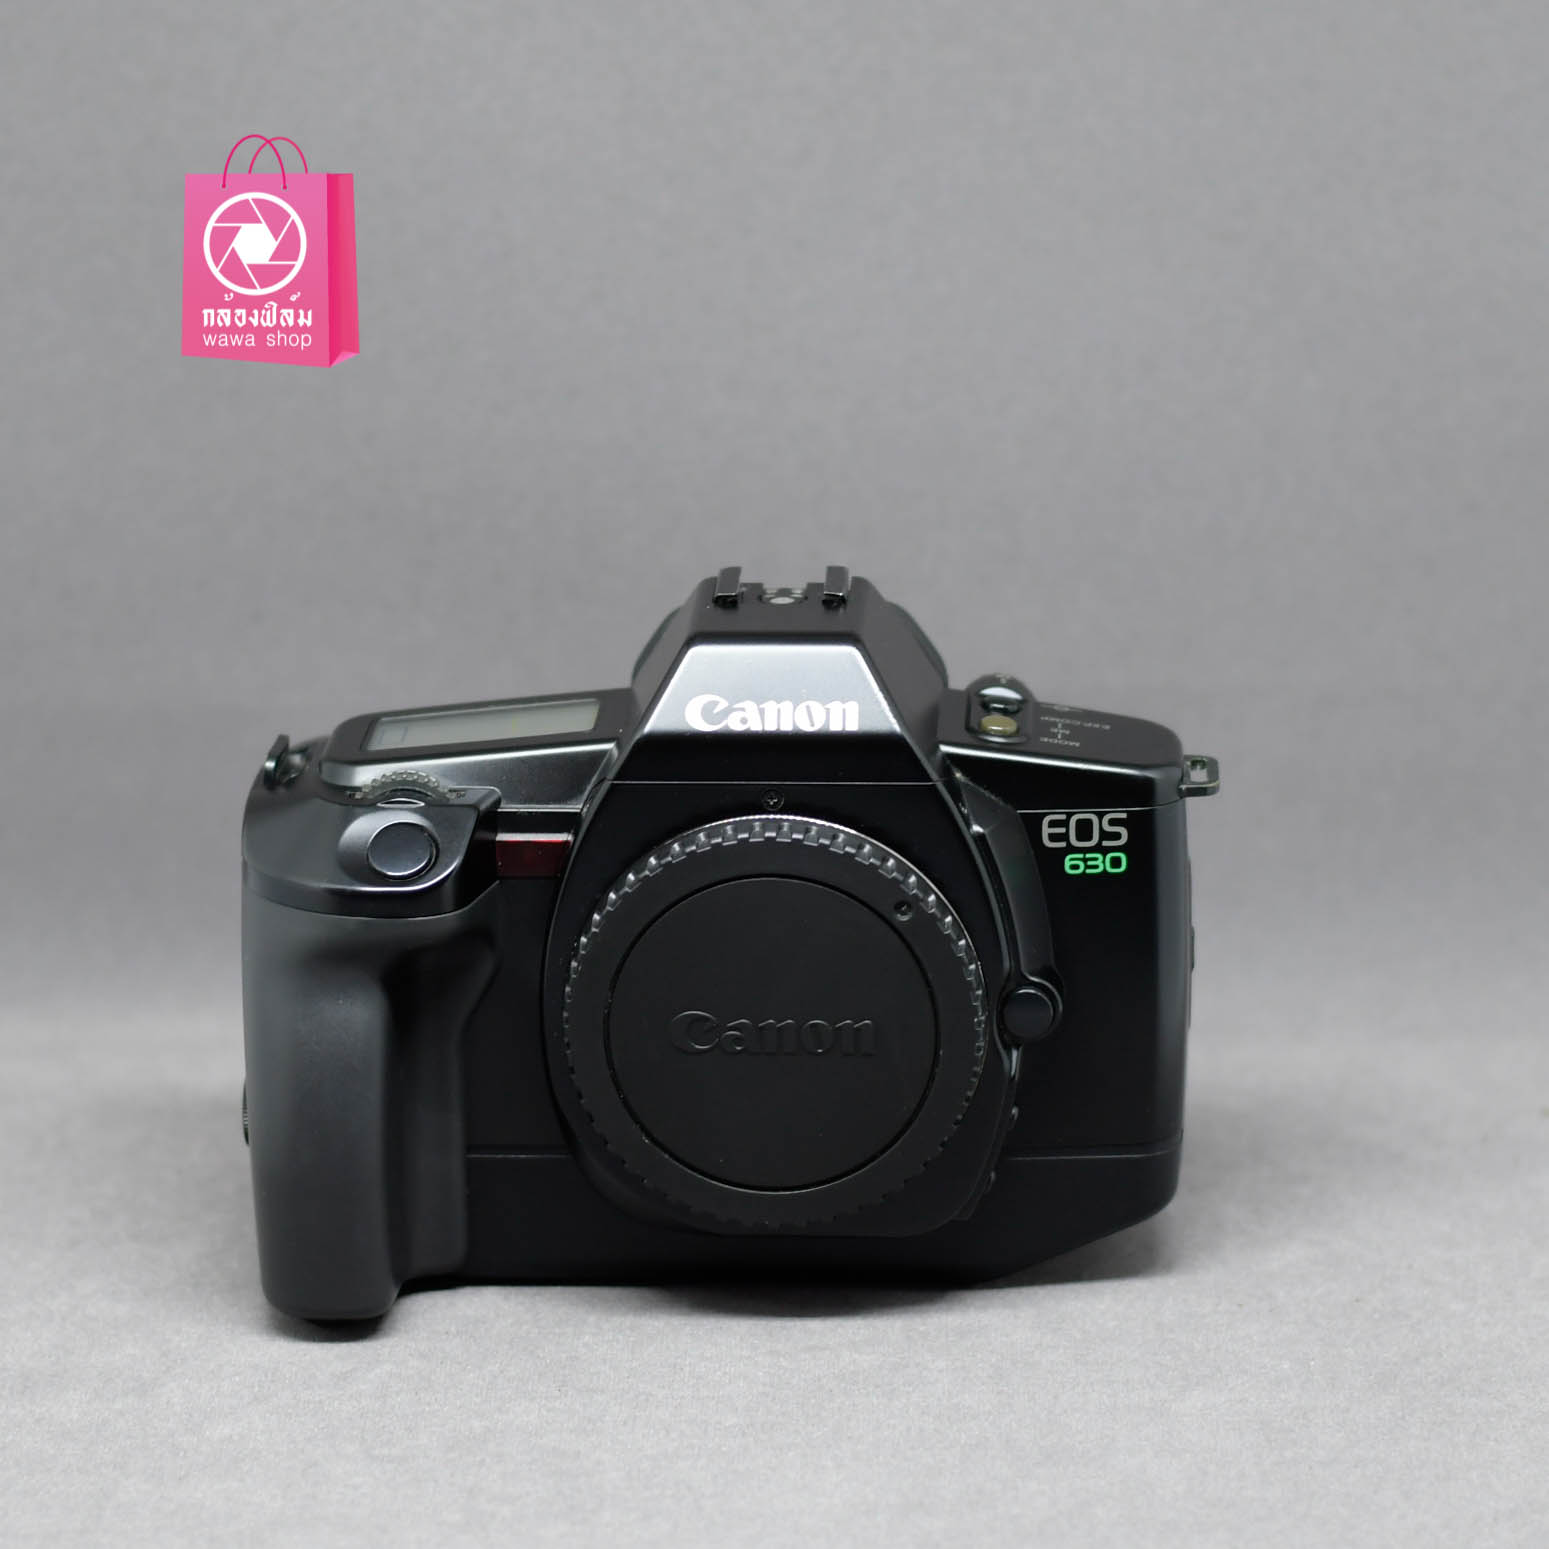 กล้องฟิล์ม Canon EOS 630 (Body)